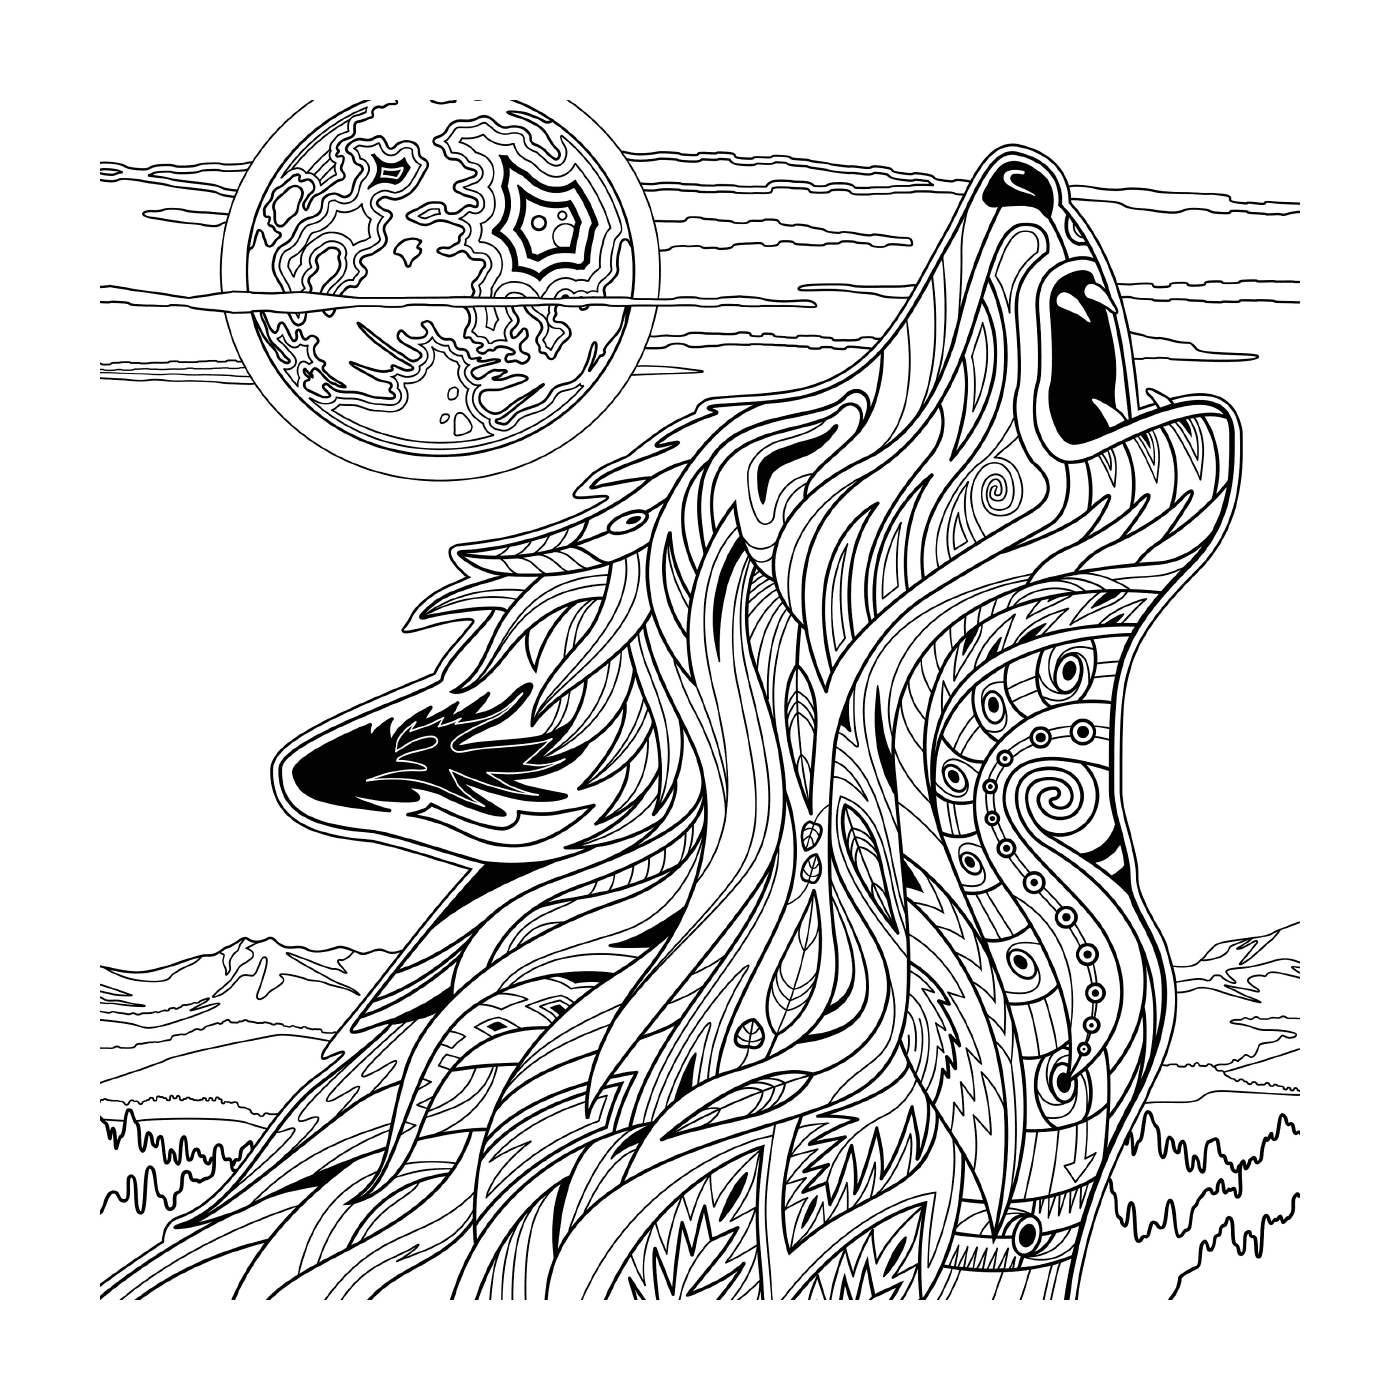  ذئب مع قمر كامل 